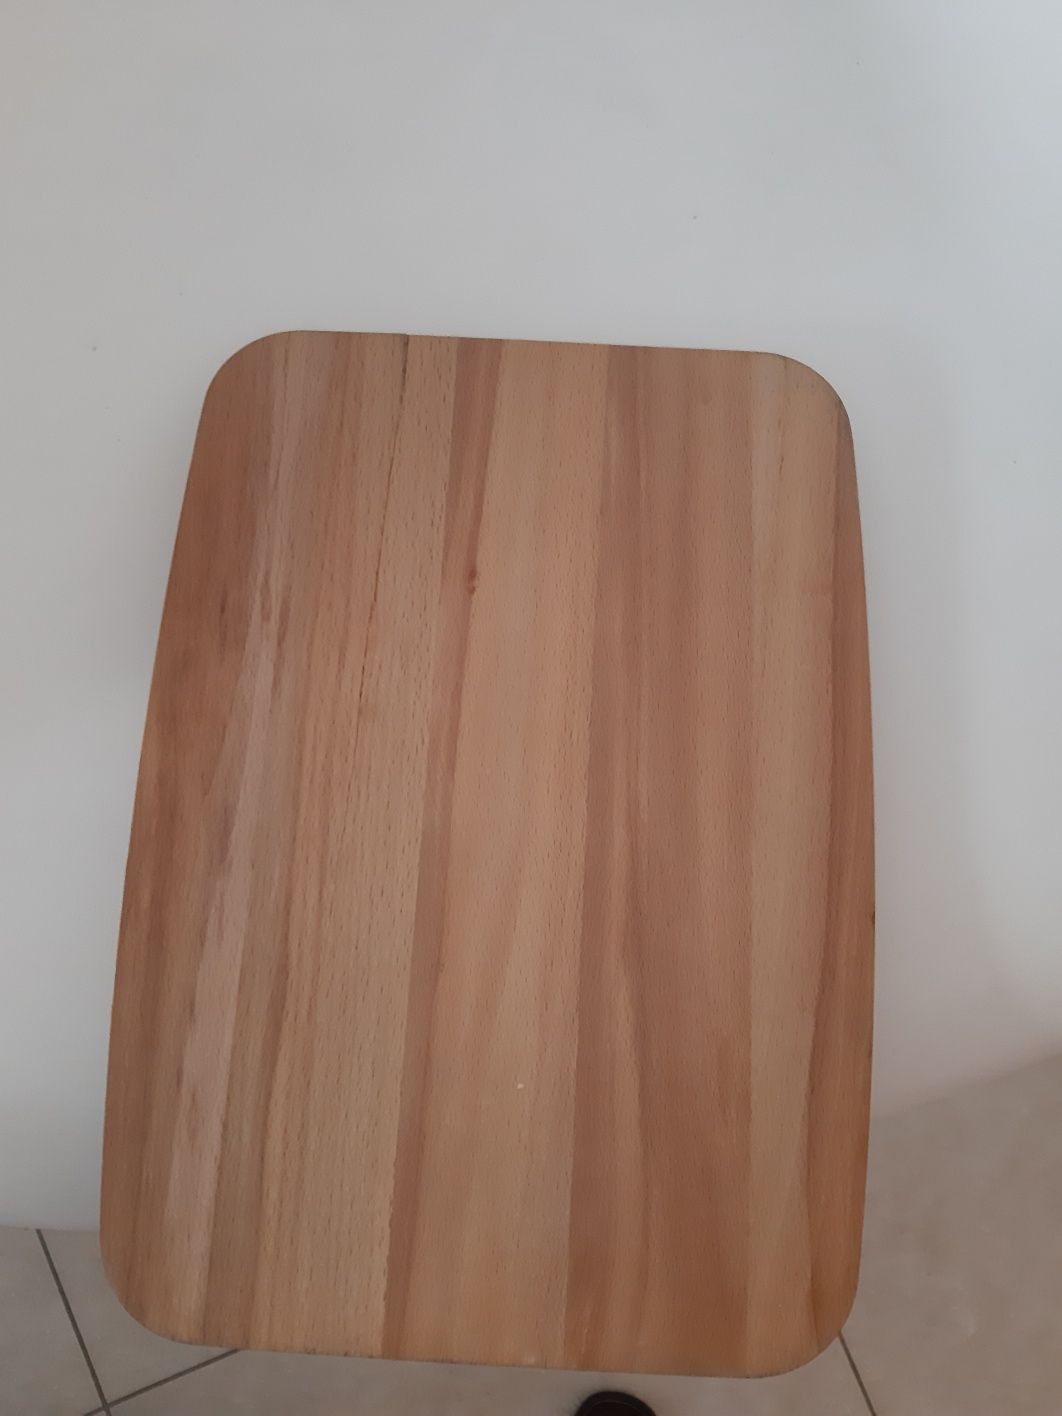 Deska chlebak drewno plastik kolekcja tkmaxx boho używane design home